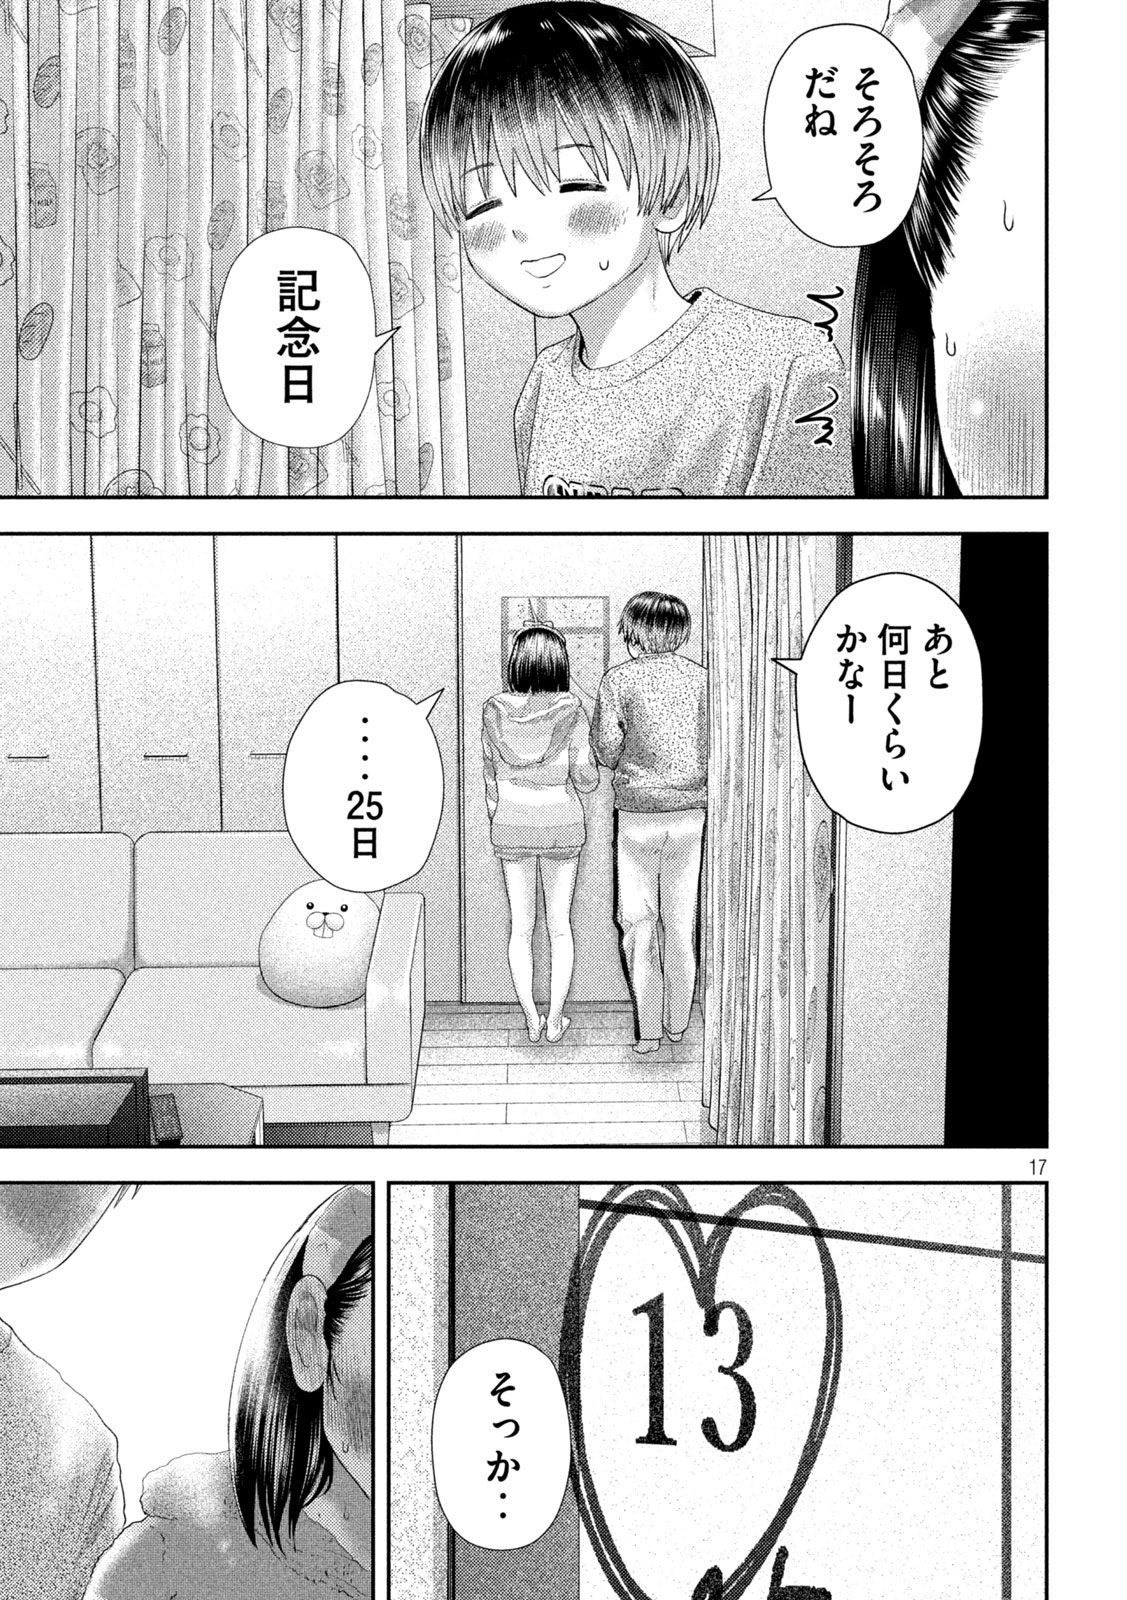 Nezumi no Koi - Chapter 29 - Page 18